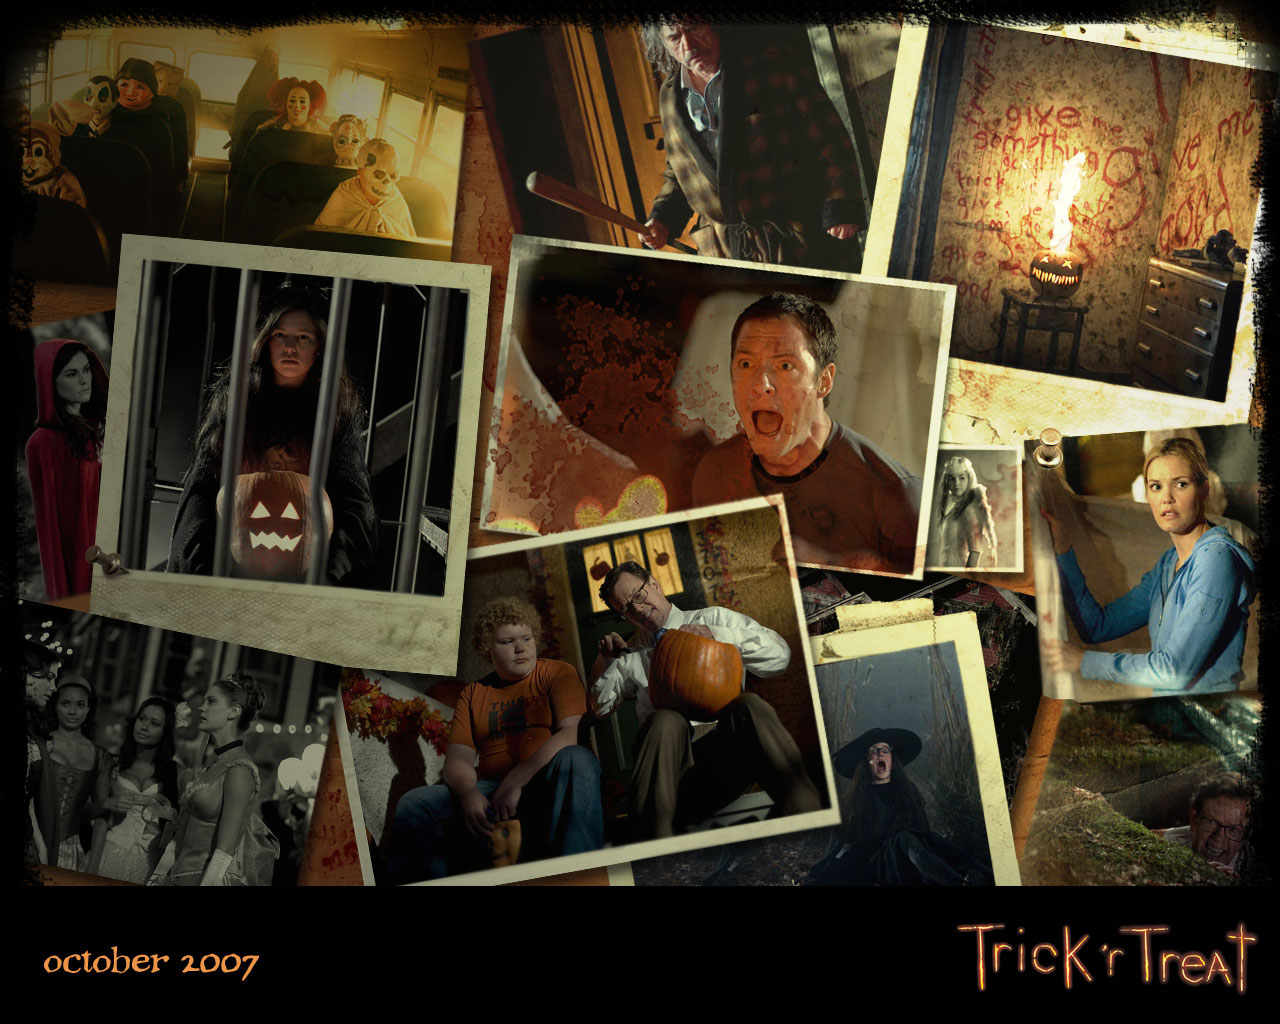 Trickr Treat - Halloween Wallpaper 294288 - Fanpop